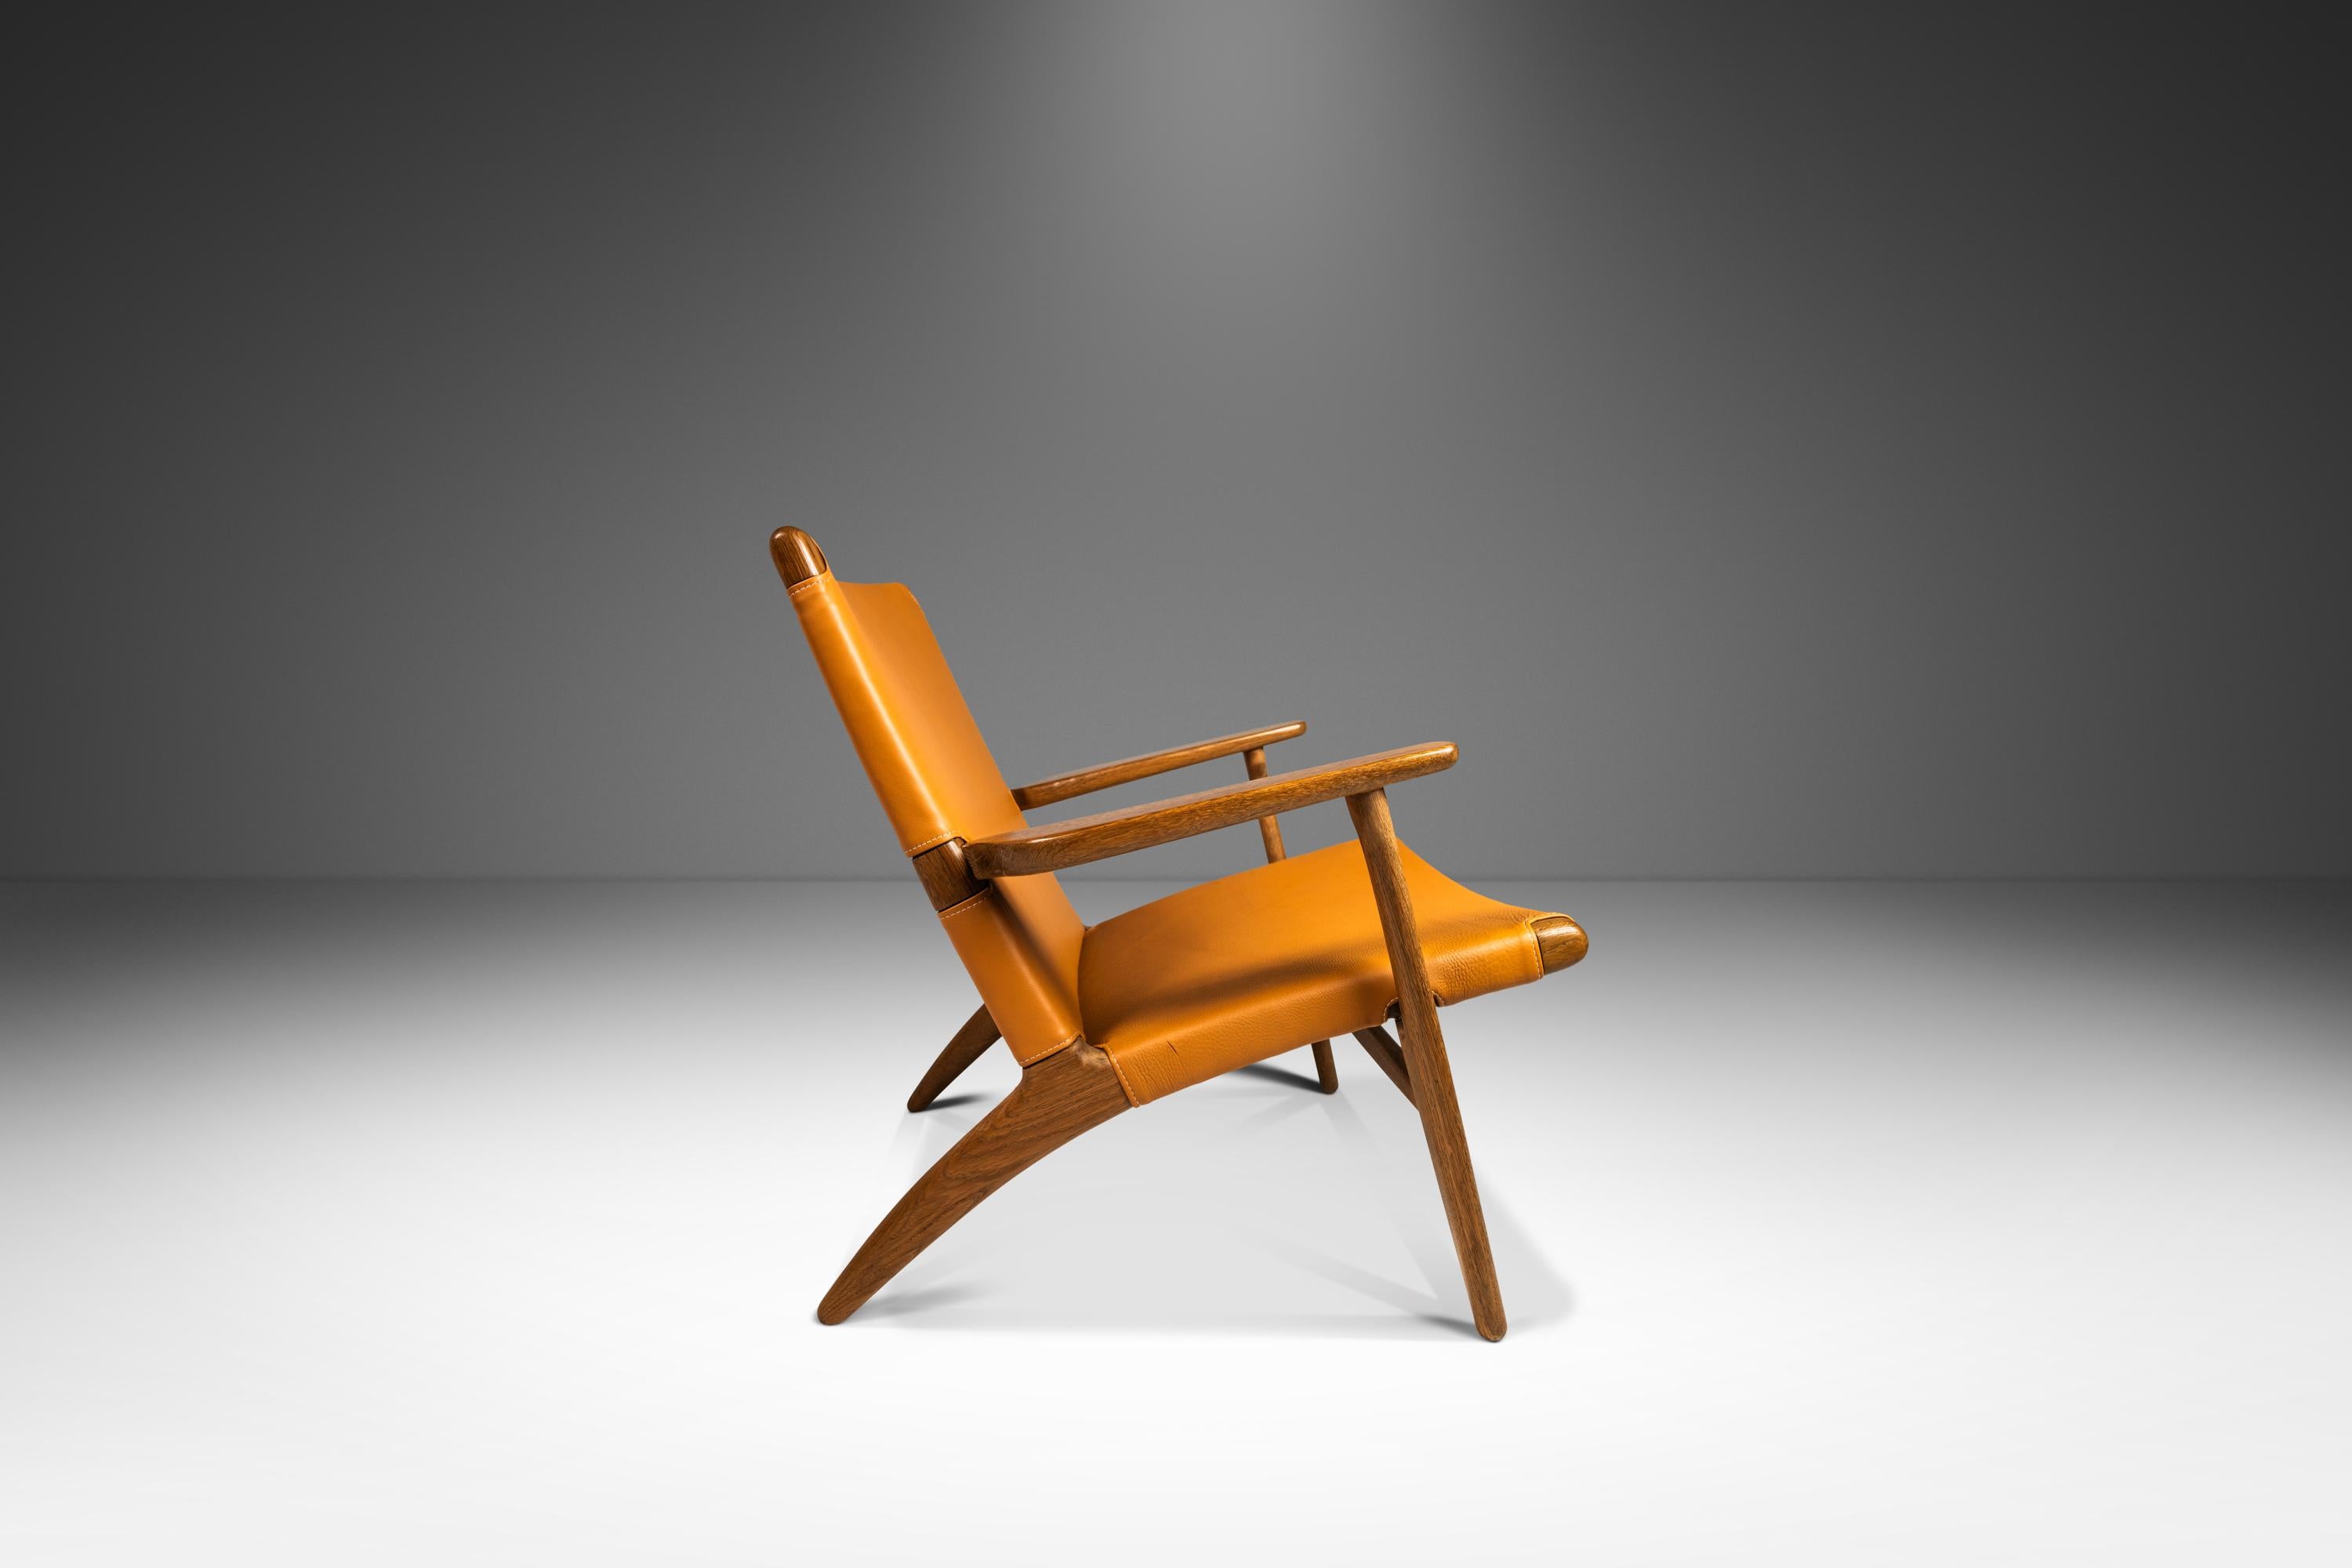  Wir stellen einen seltenen, alten Stuhl Modell CH 25 von Hans J. Wegner für Carl Hansen & Søn vor, der in den späten 1950er Jahren in Dänemark gebaut wurde. Der CH25 Loungesessel ist, wie viele andere ikonische Entwürfe von Hans J. Wegner, klar und